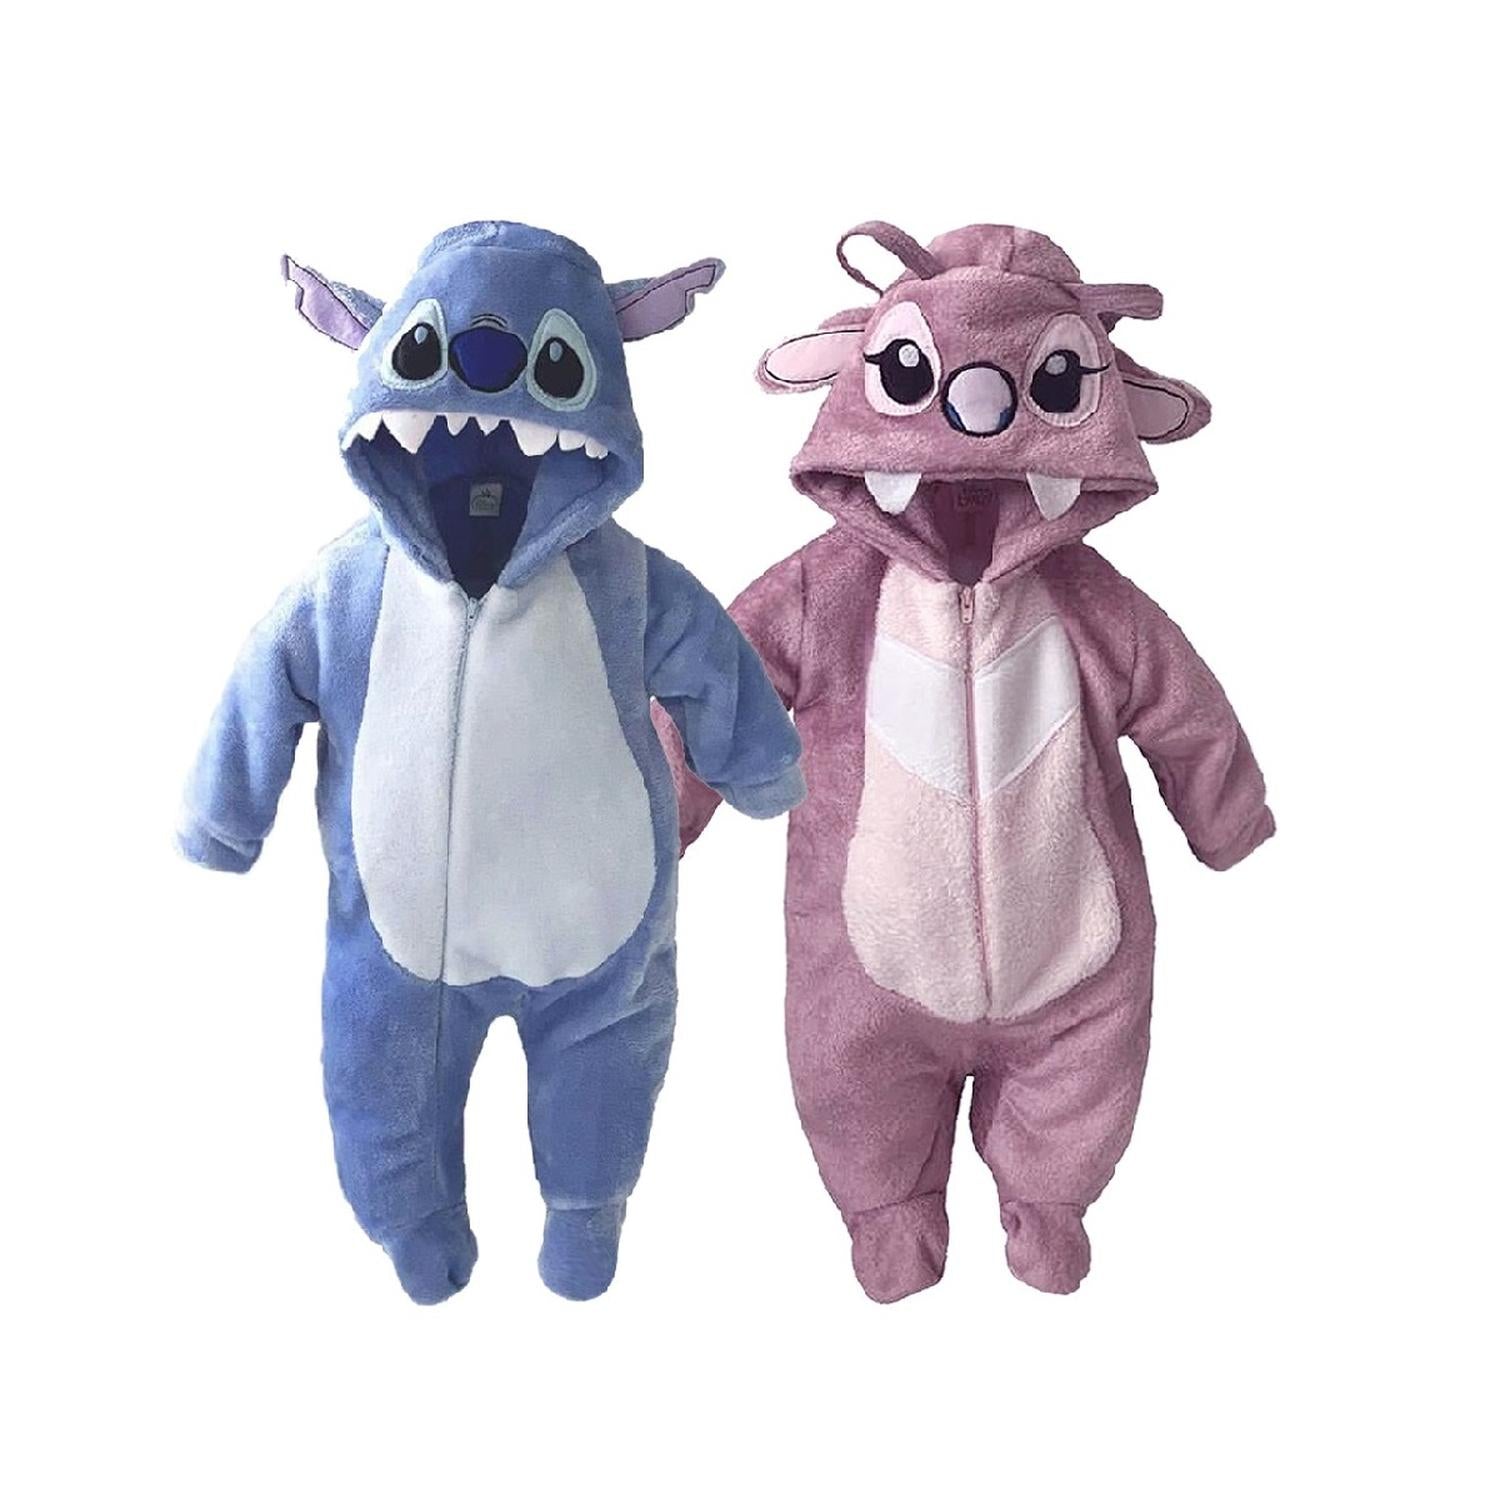 pijamas de stitch bebe – Compra pijamas de stitch bebe con envío